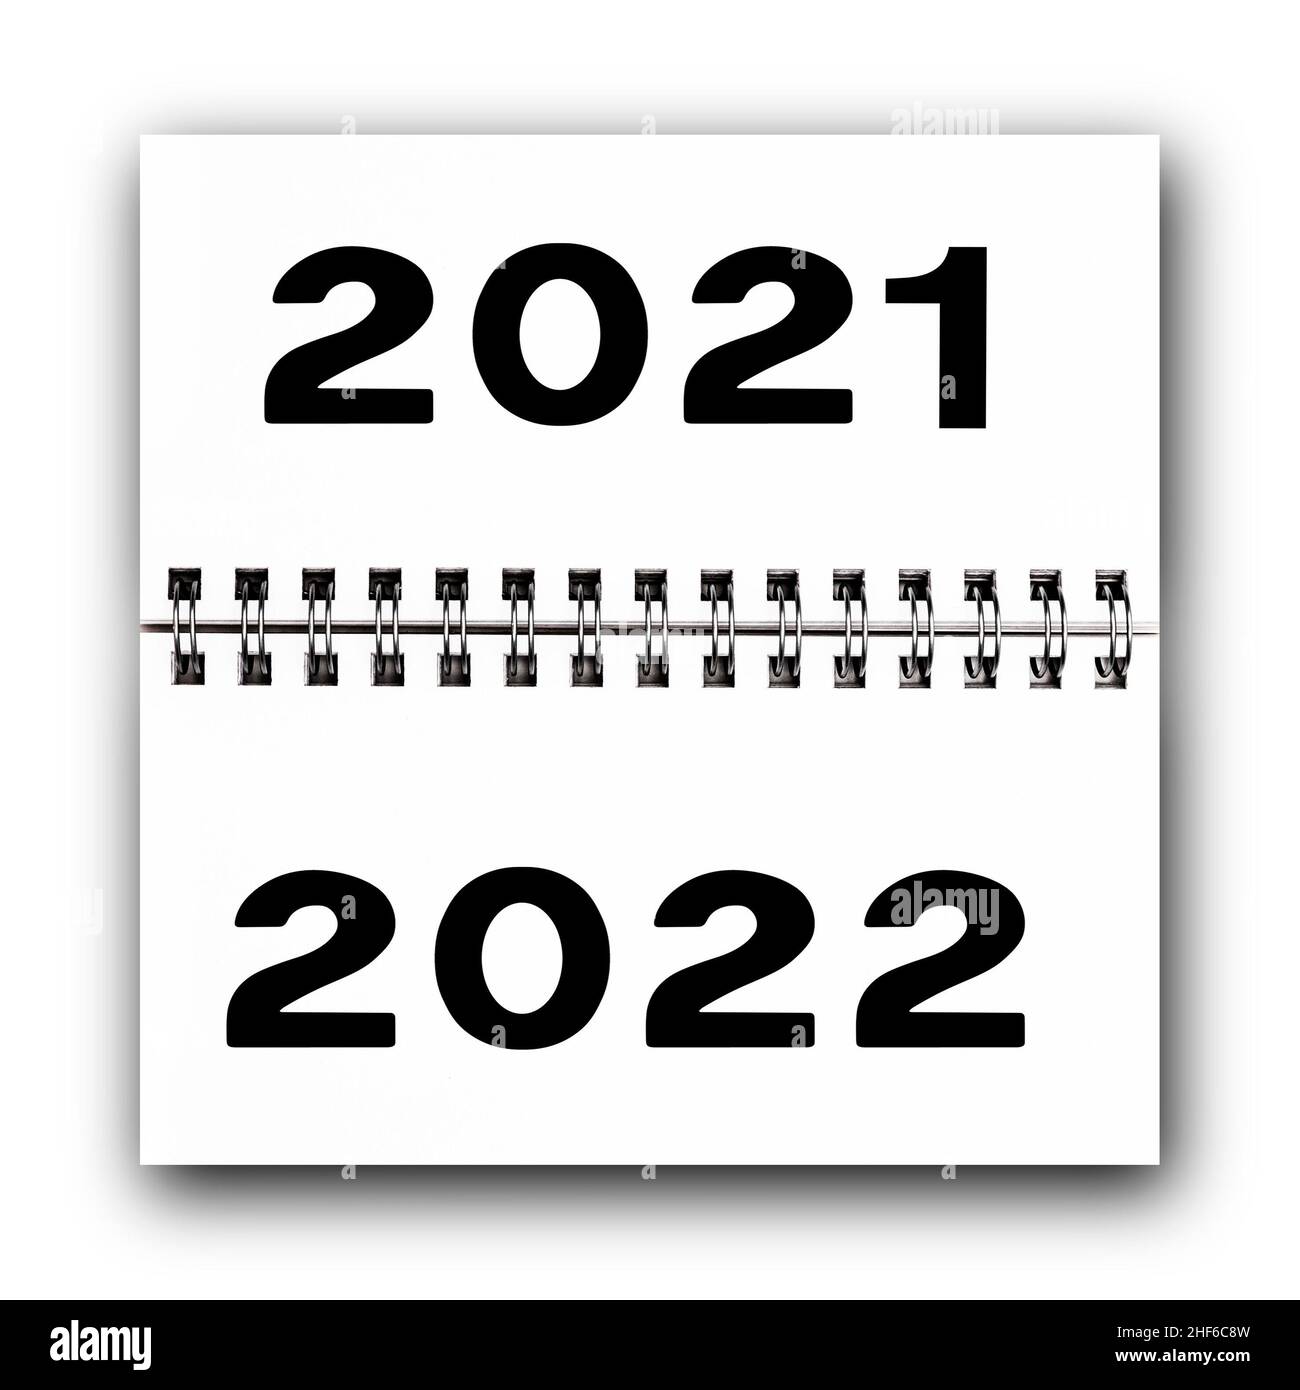 Calendario con el cambio de año de 2021 a 2022 Foto de stock